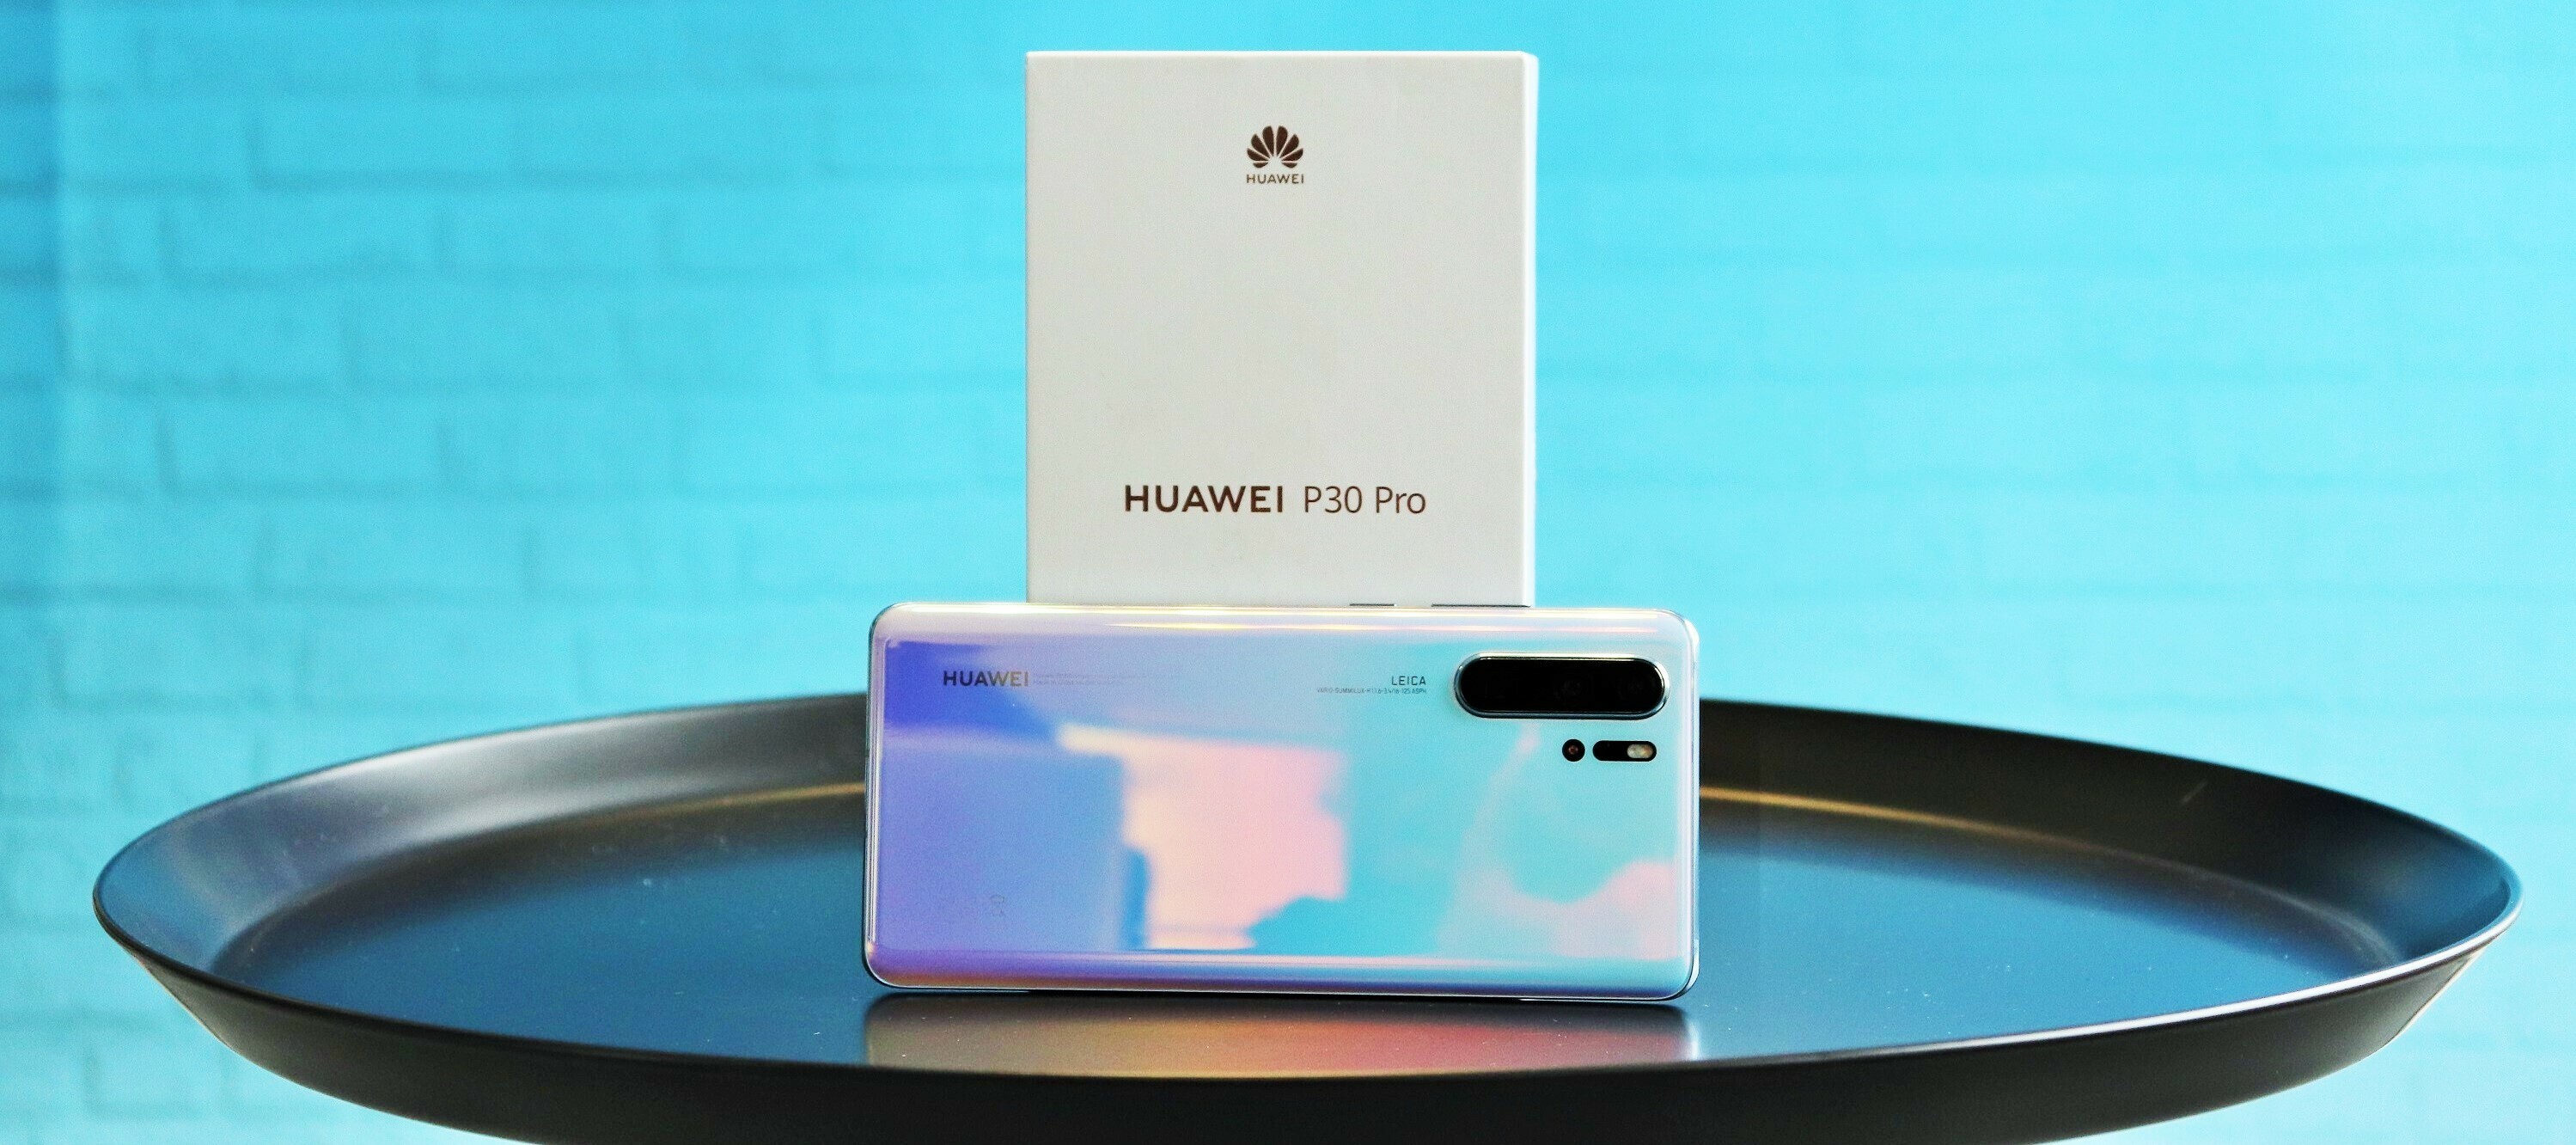 Huawei P30 Pro Testgerät - Ein neuer Produkttest wird gesucht - jetzt bewerben!